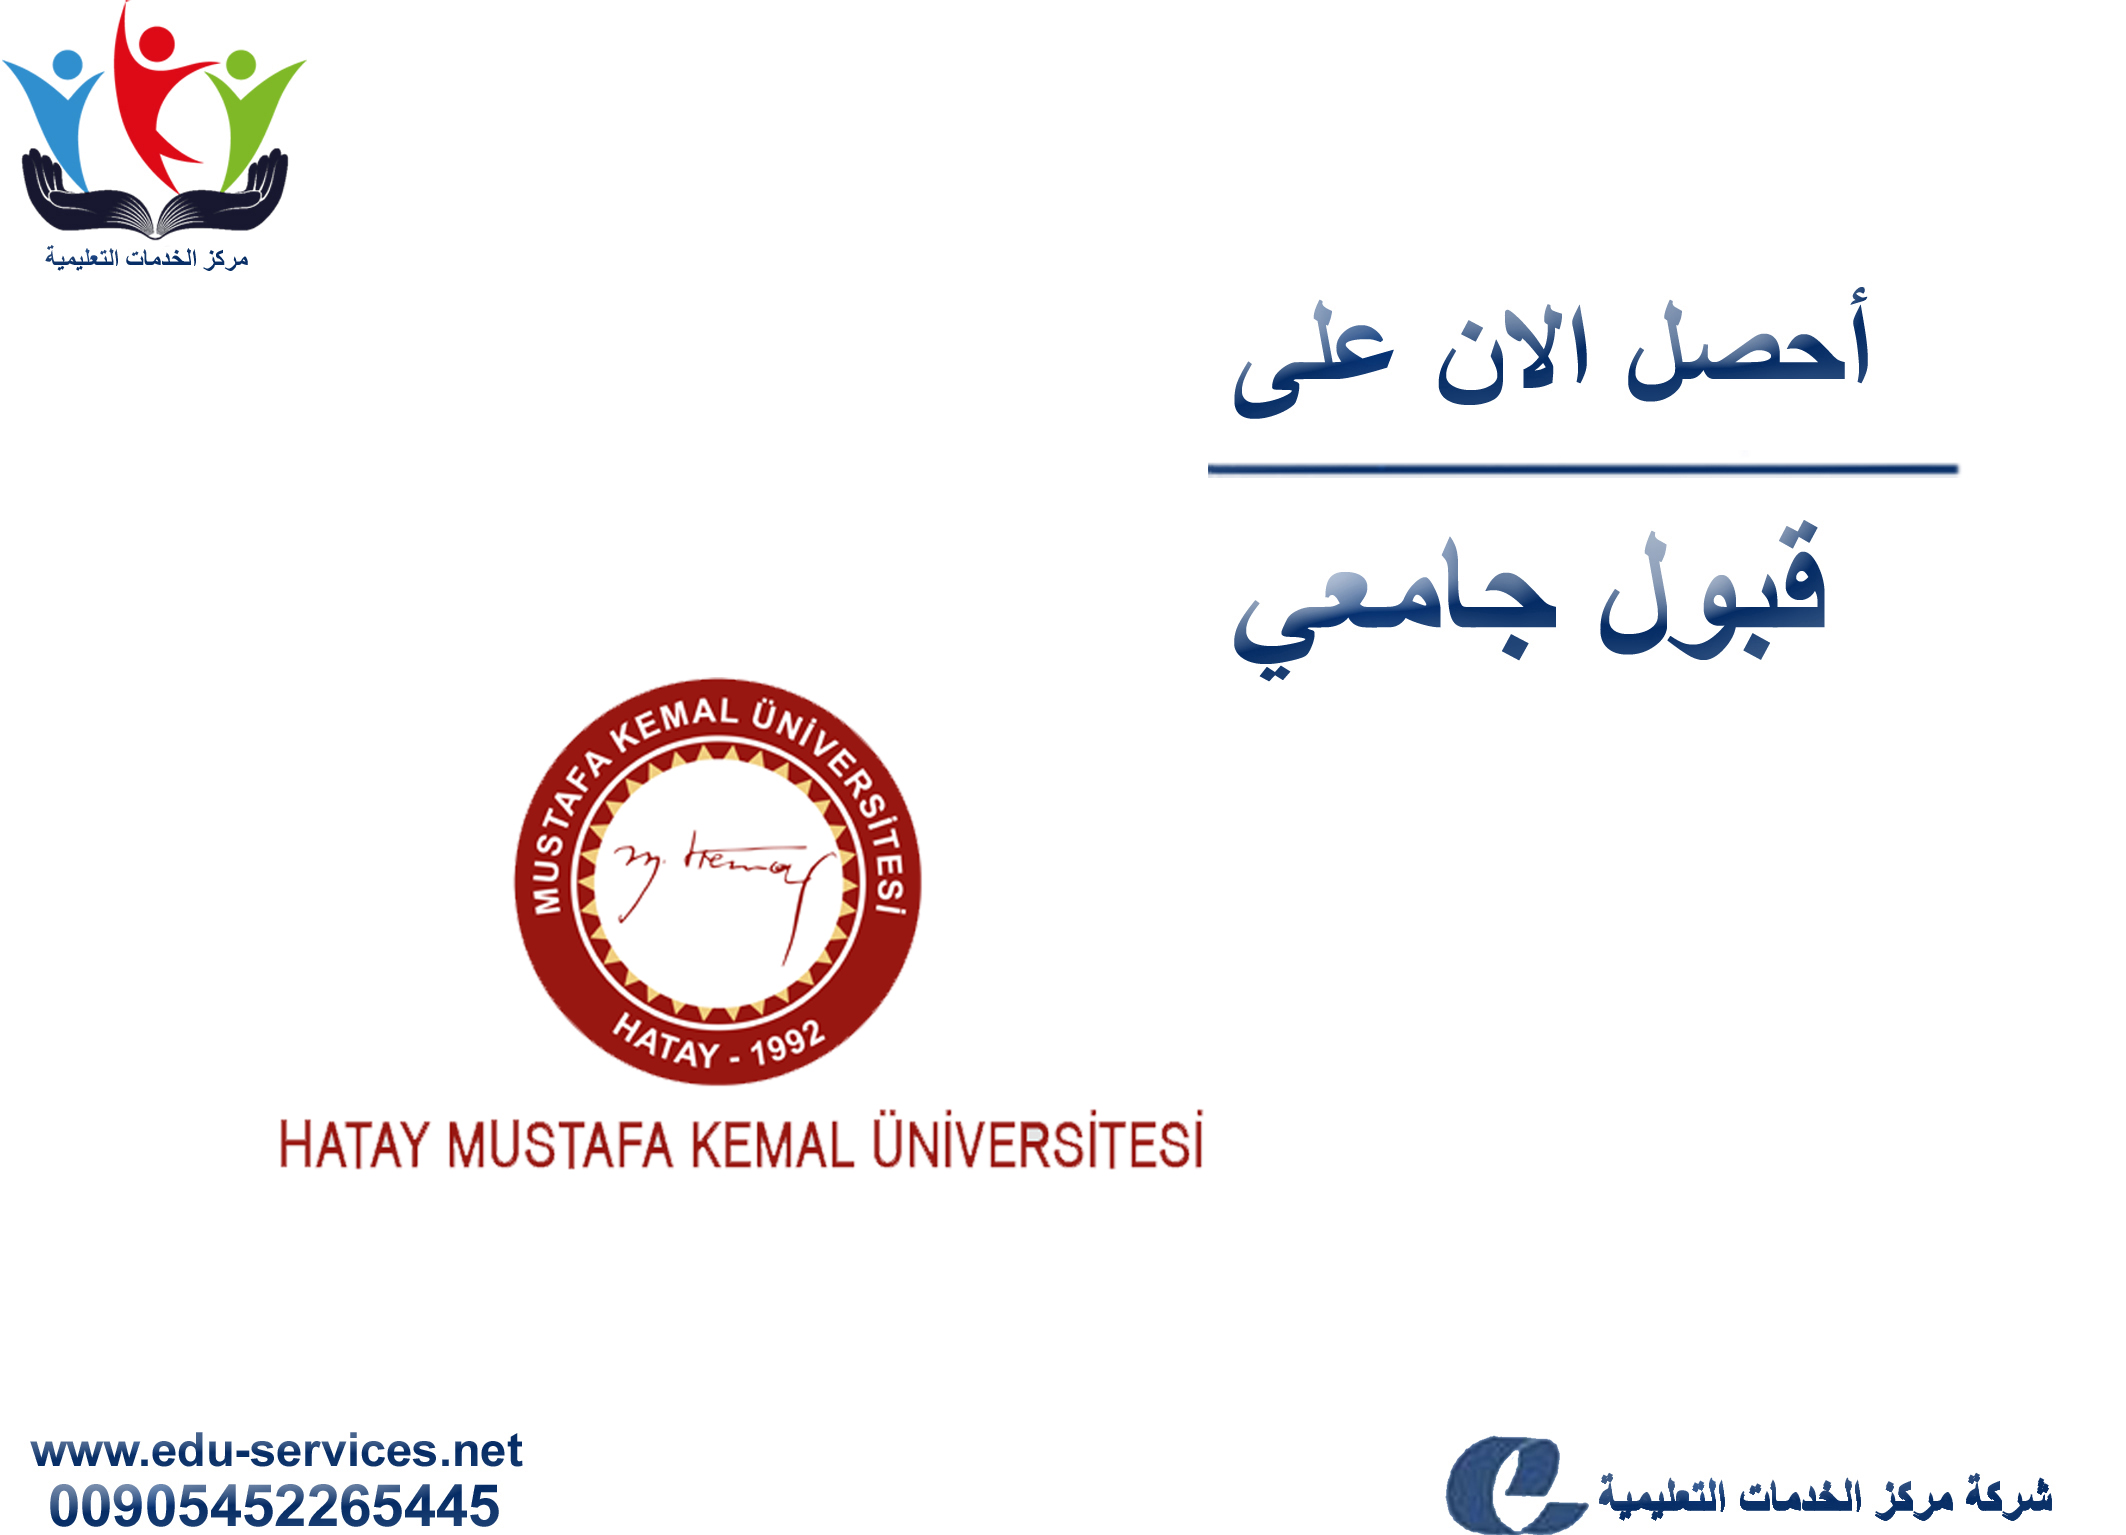 افتتاح التسجيل على جامعة مصطفى كمال لبرنامج الدراسات العليا للعام 2019-2020